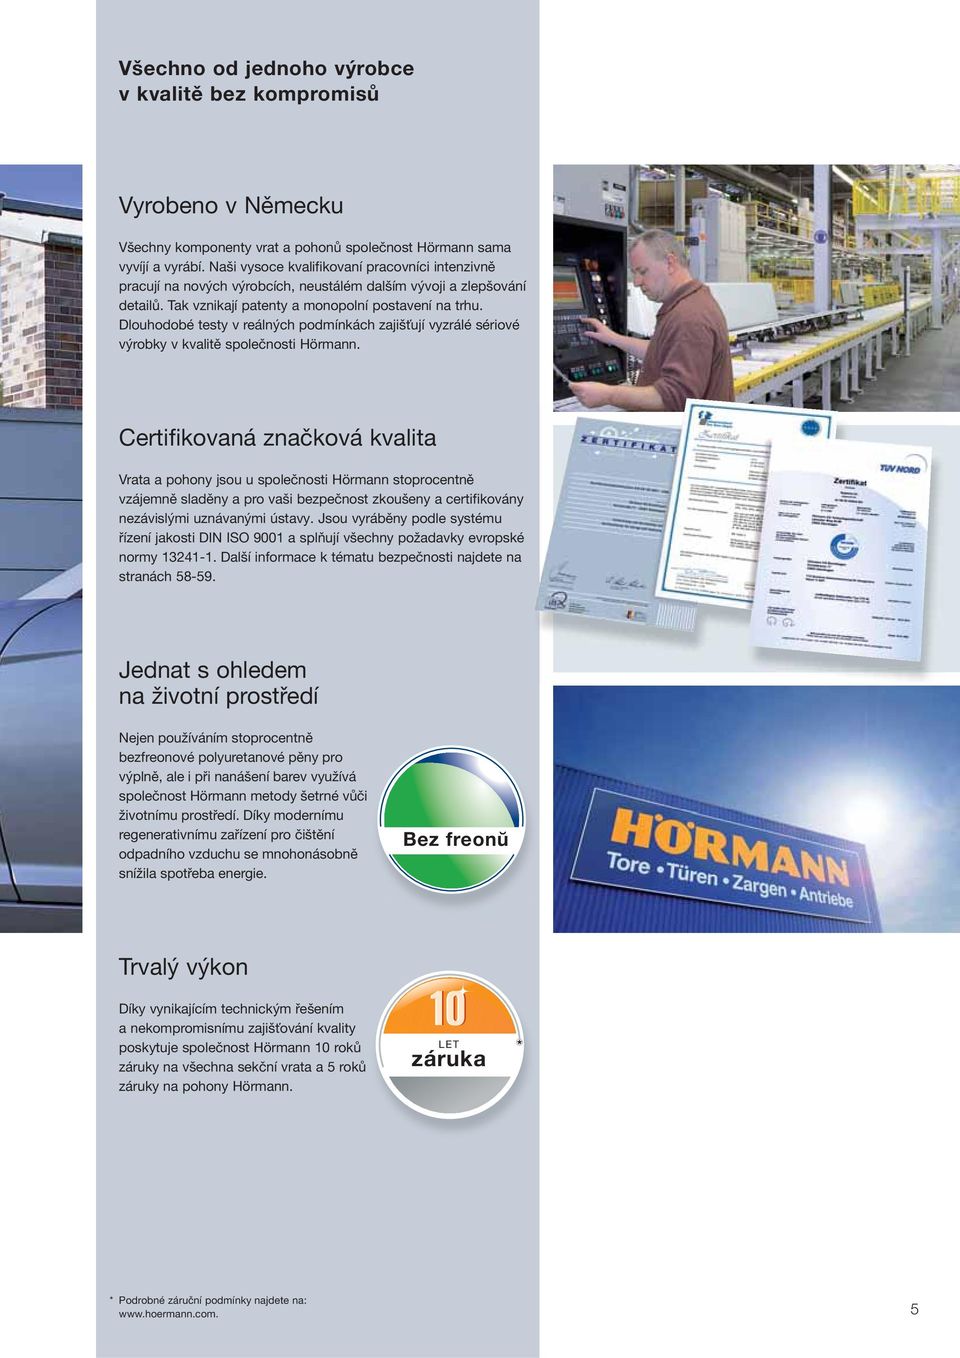 Dlouhodobé testy v reálných podmínkách zajišťují vyzrálé sériové výrobky v kvalitě společnosti Hörmann.